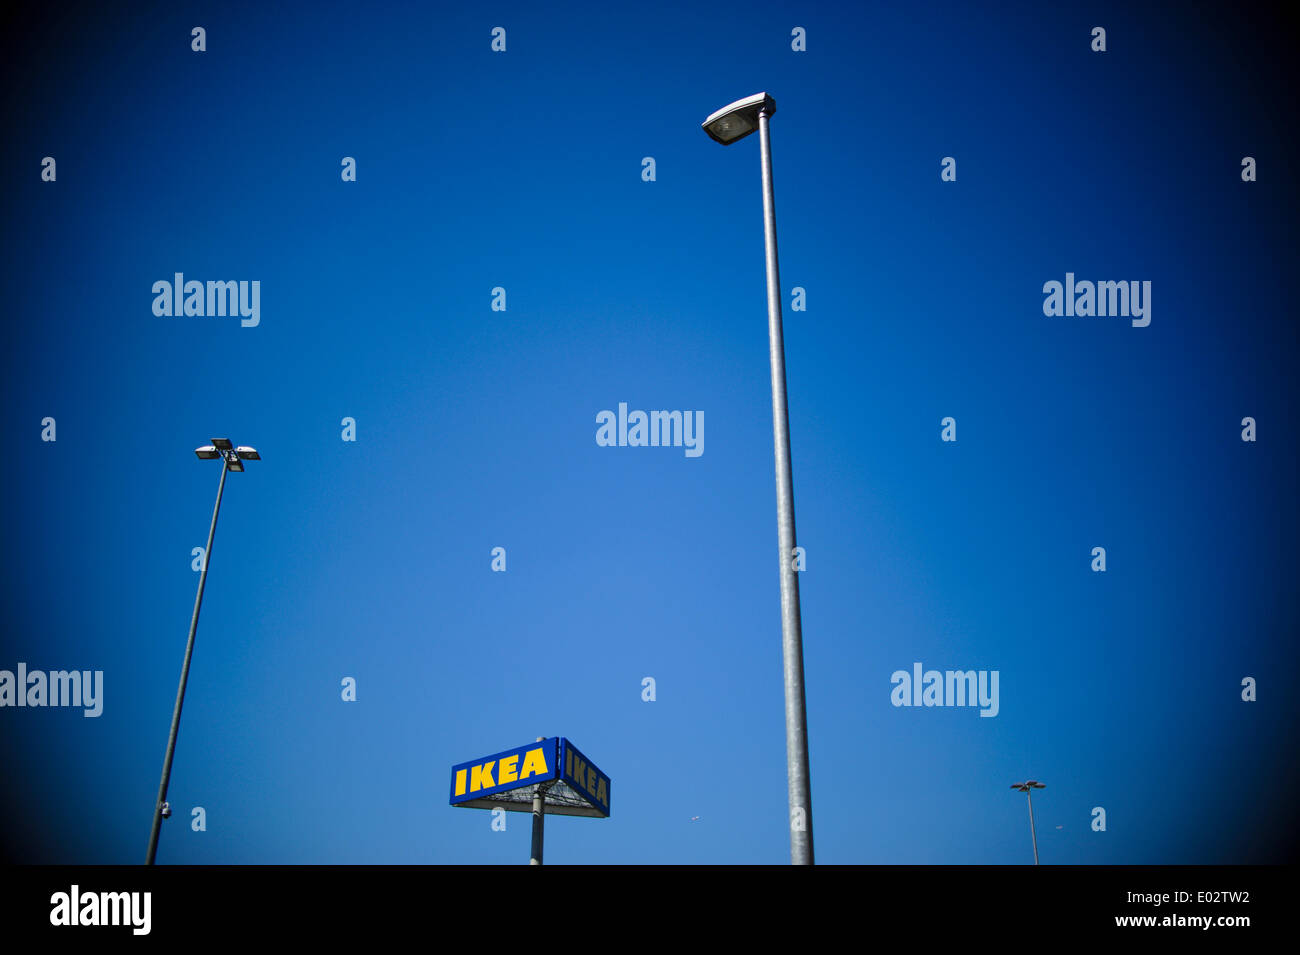 Ongeëvenaard zegen ballon Ikea store in berlin photo hi-res stock photography and images - Alamy